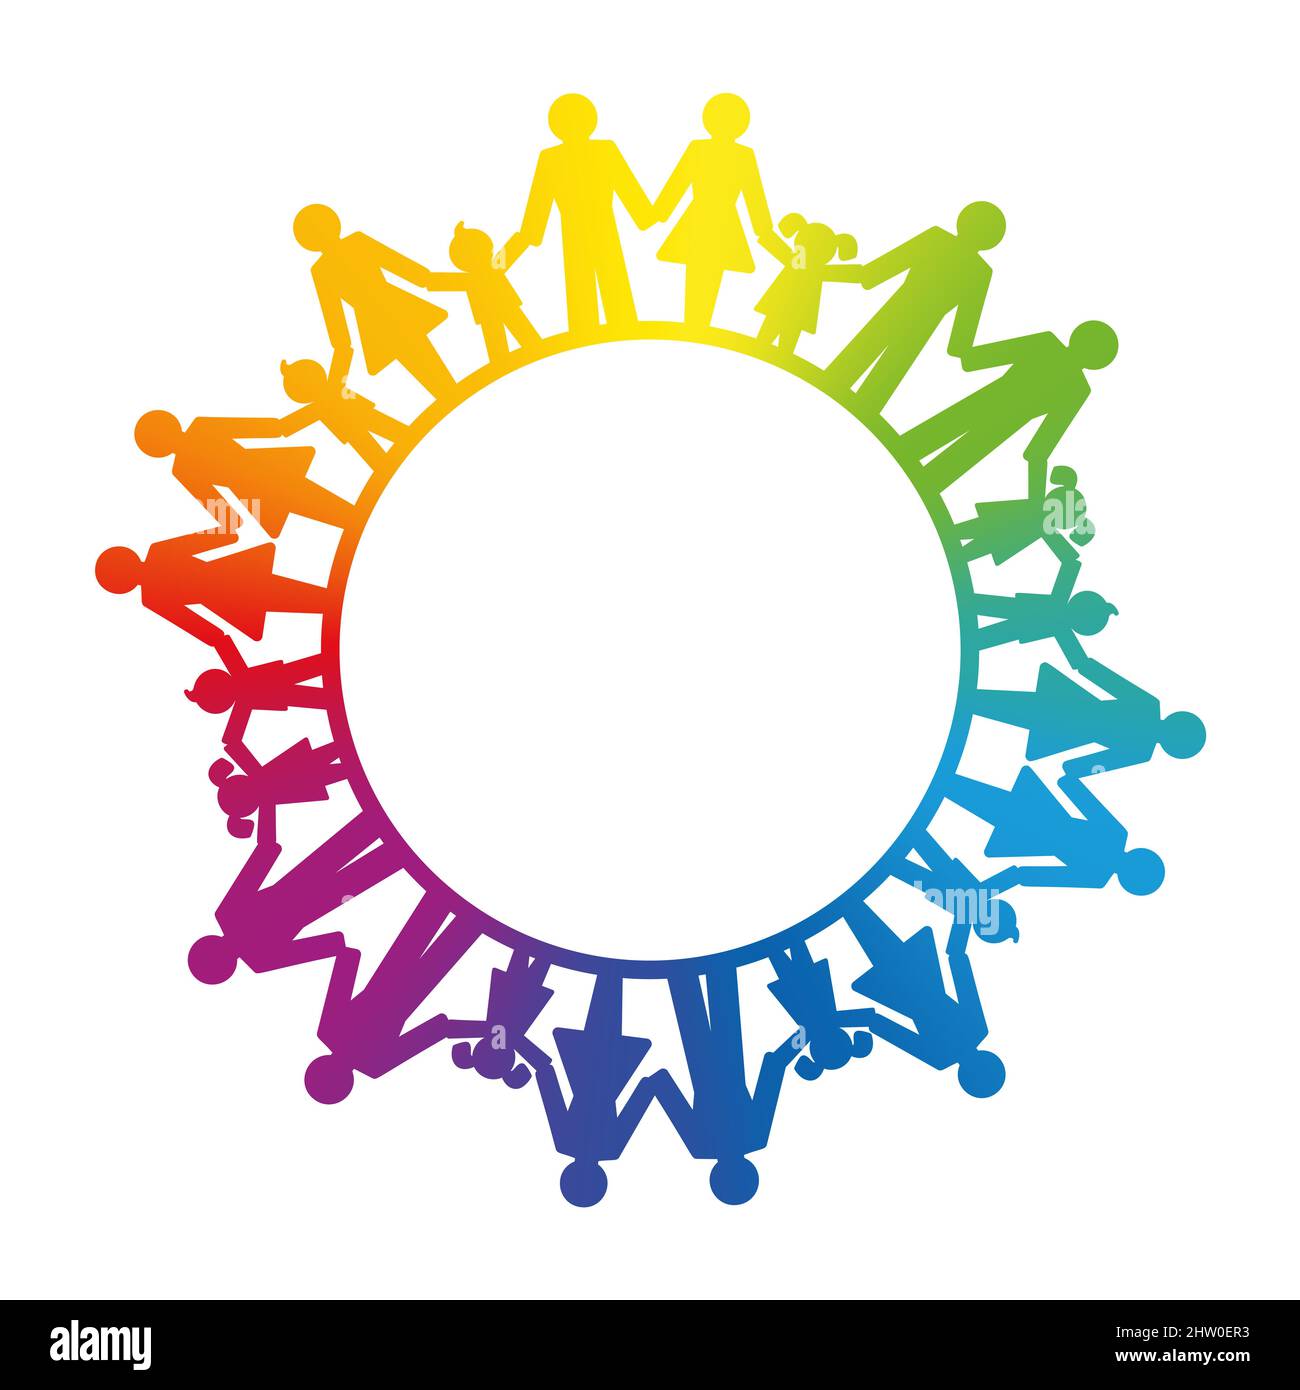 Gruppe von Menschen, verbunden durch die Hände halten, bilden einen regenbogenfarbenen Kreis. Symbol der Solidarität der Menschen, Ausdruck einer friedlichen Gesellschaft. Stockfoto